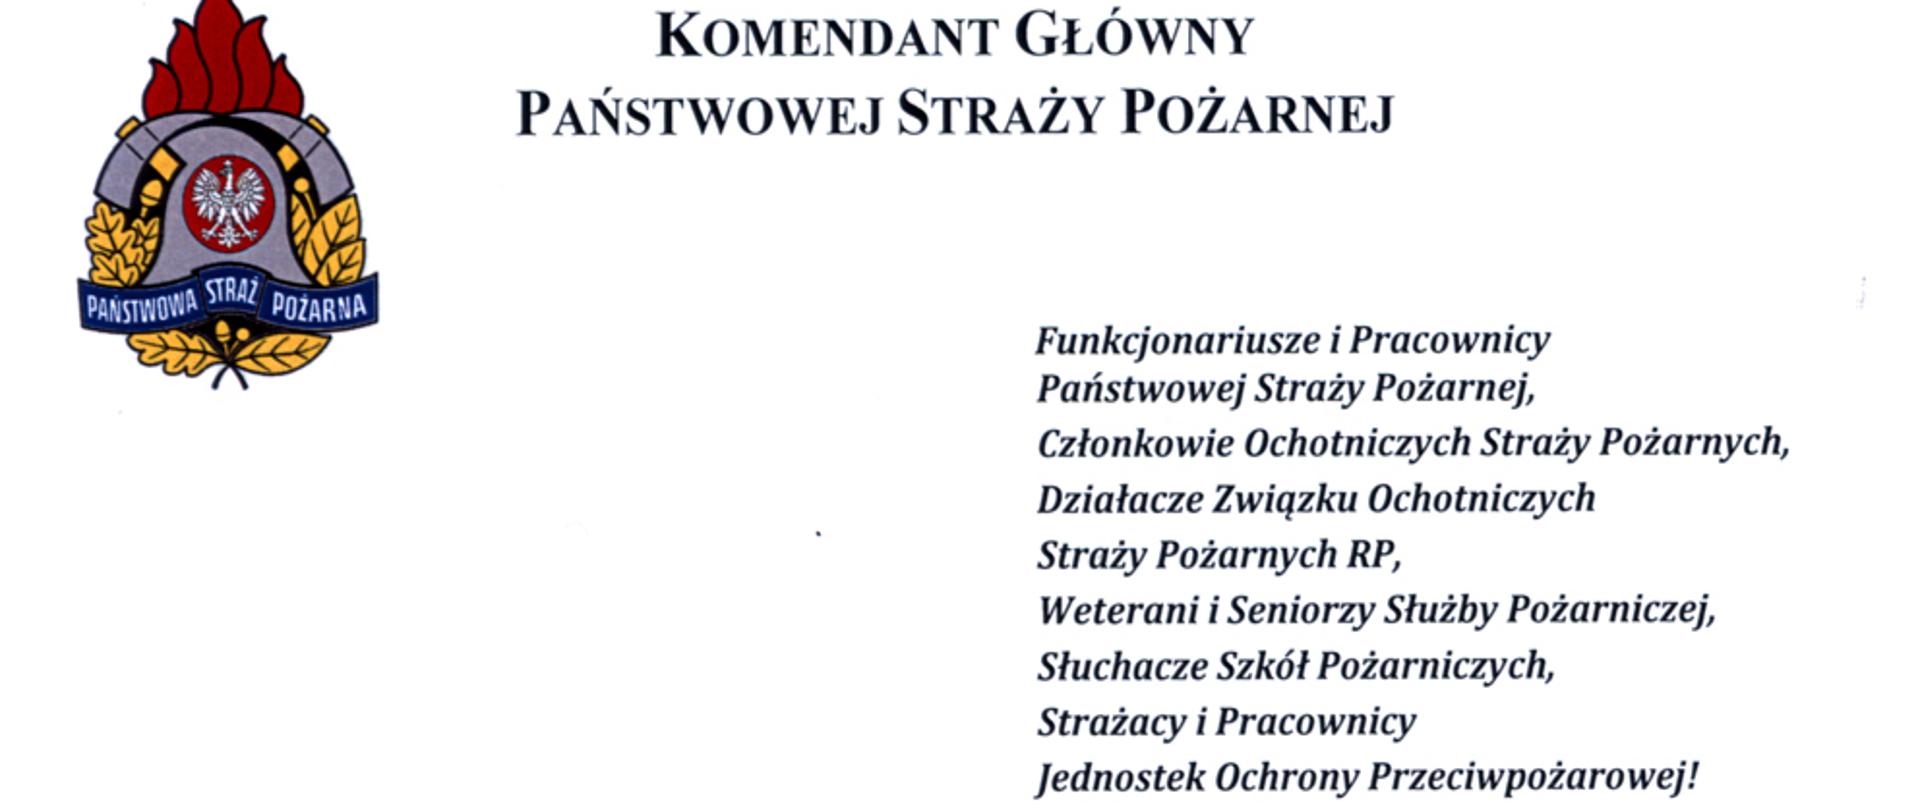 Życzenia komendanta głównego PSP z okazji Dnia Strażaka napisane czarnym drukiem na białym tle.